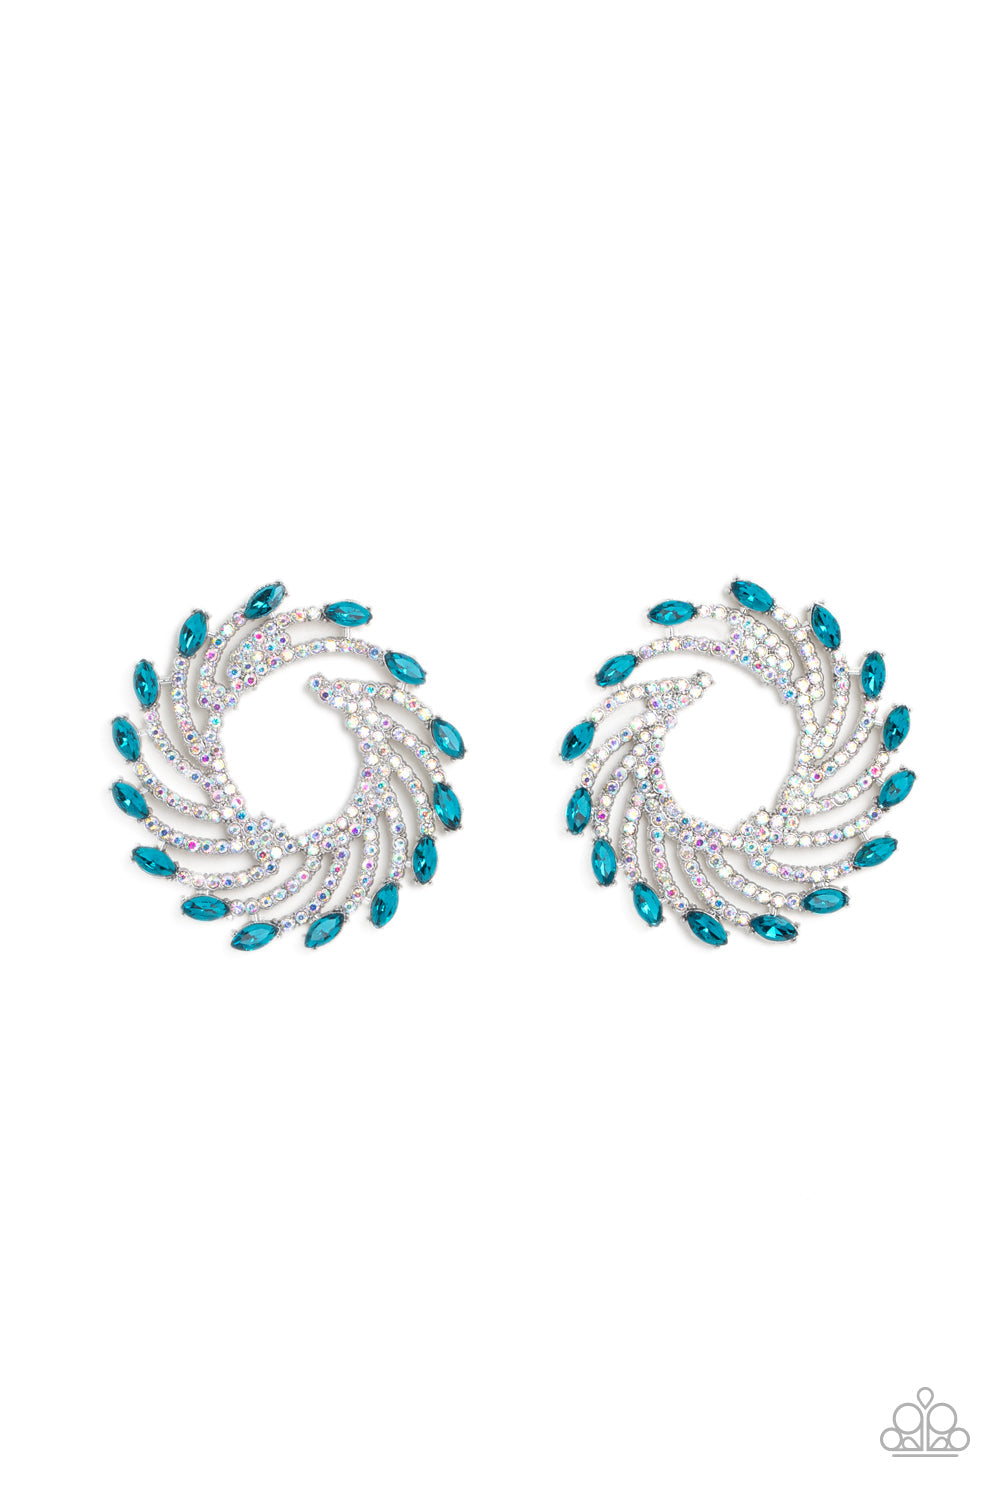 Firework Fanfare - Blue Marquise-Cut Gems & Iridescent Rhinestone "Fan" Paparazzi Earrings